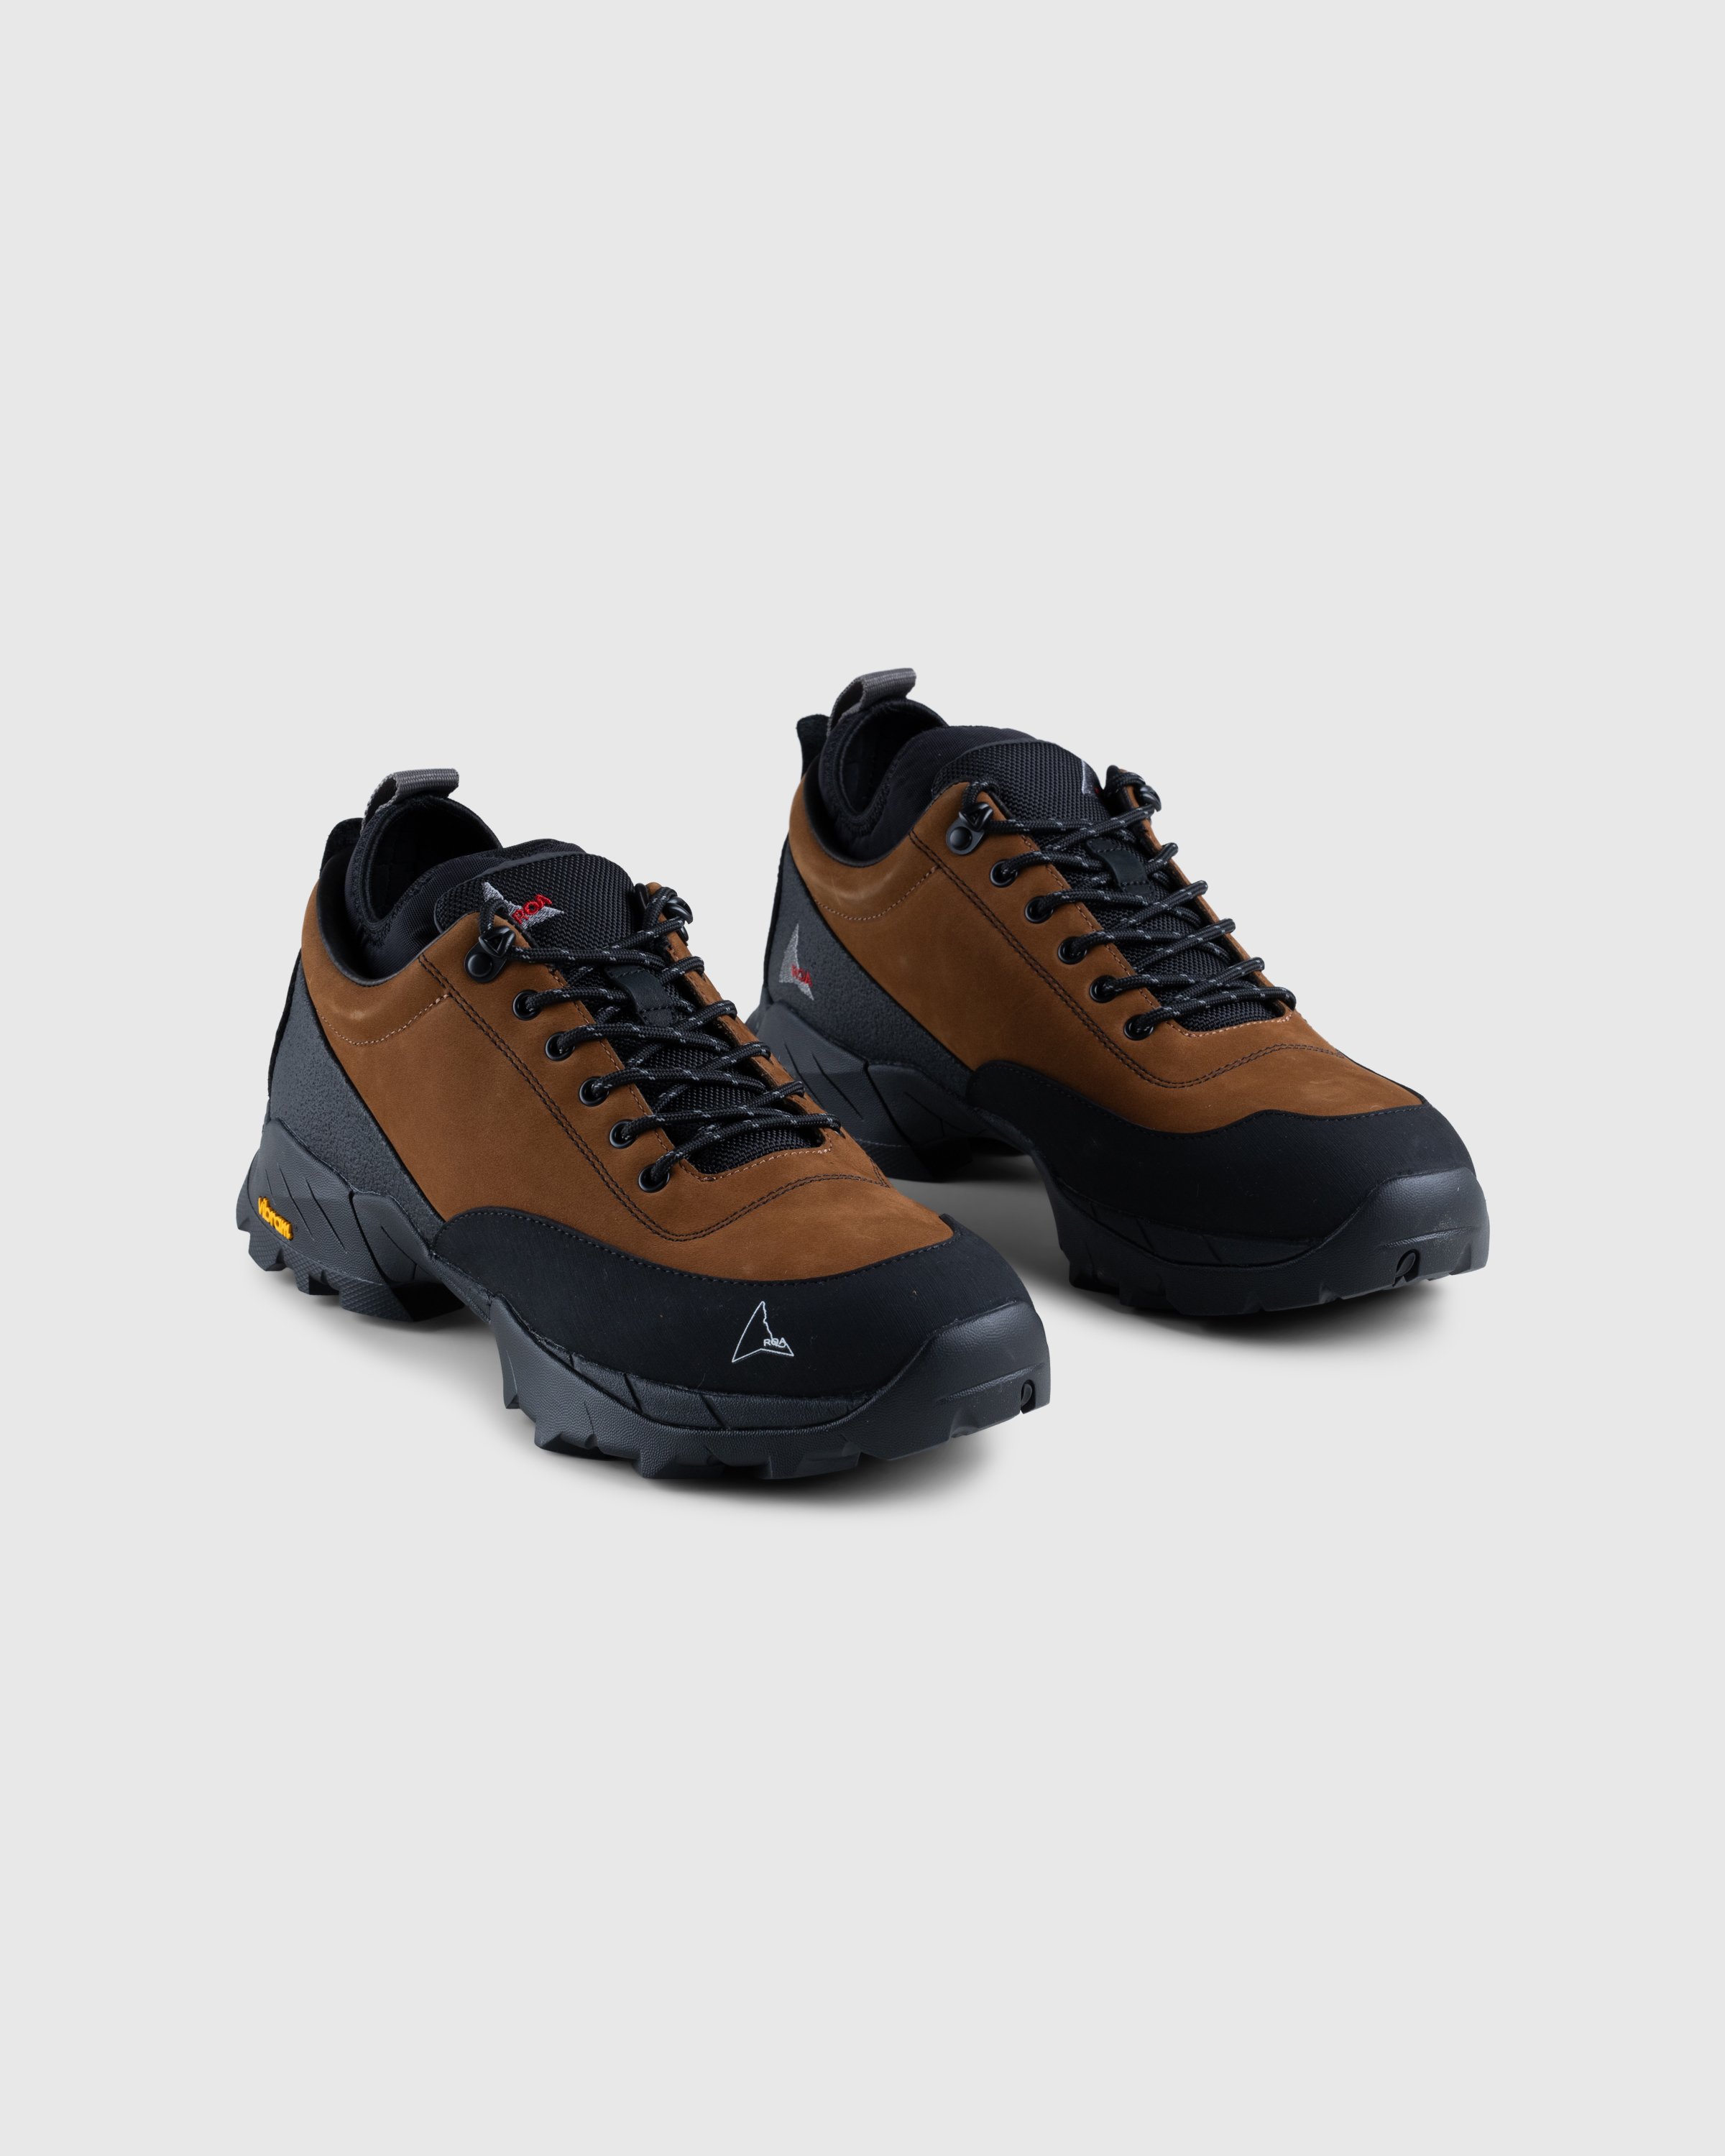 ROA - Neal Sneakers Brown/Black - Footwear - Brown - Image 3